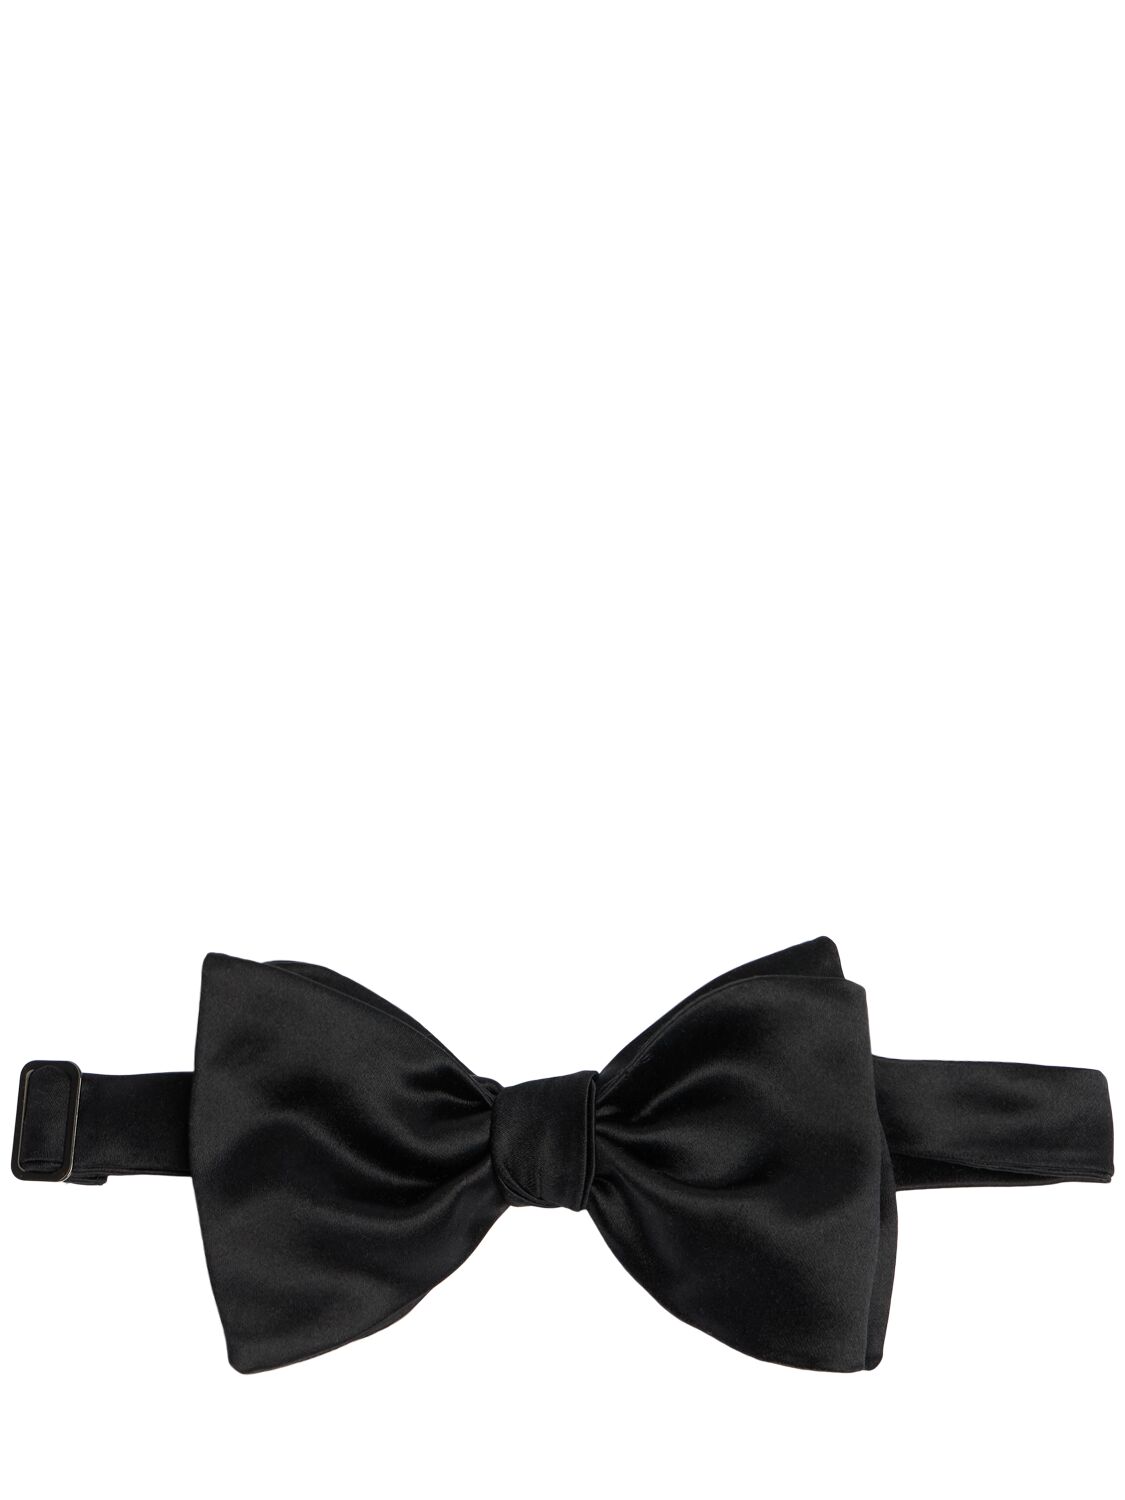 Brunello Cucinelli Duchesse Satin Bow Tie In Black